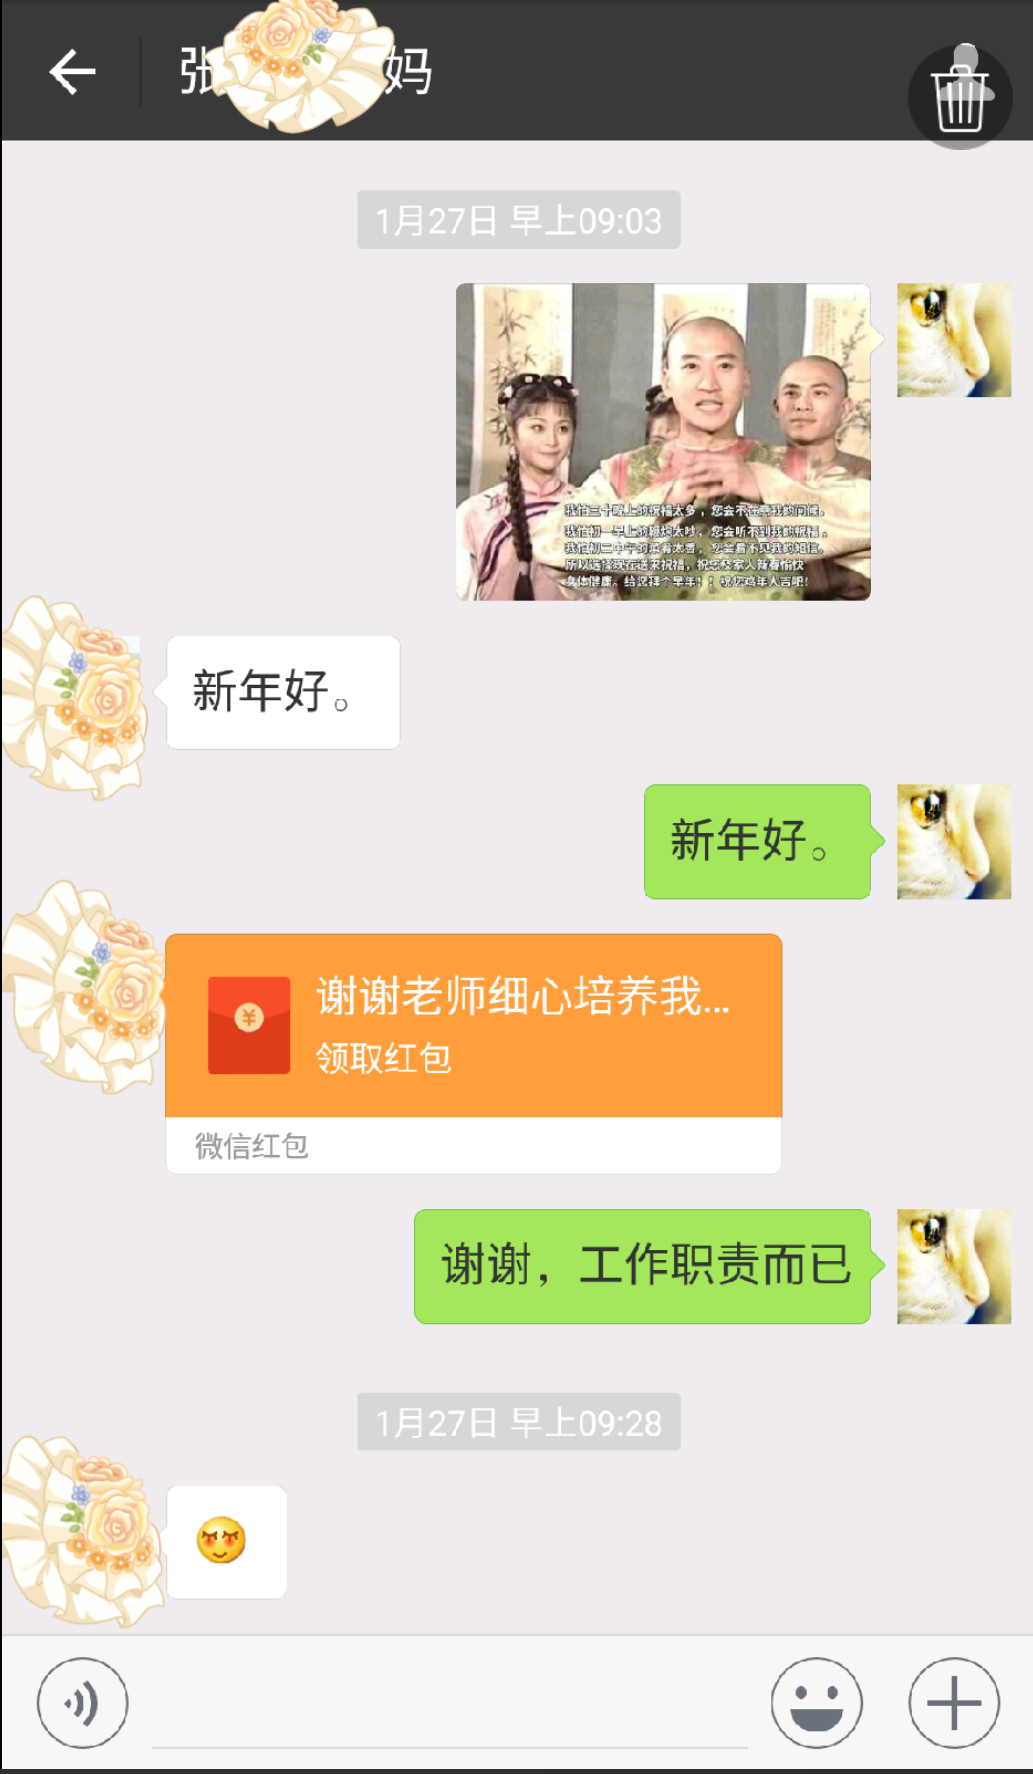 支付宝扫码领红包表情 - 斗图大会 - 真正的斗图网站 - dou.yuanmazg.com